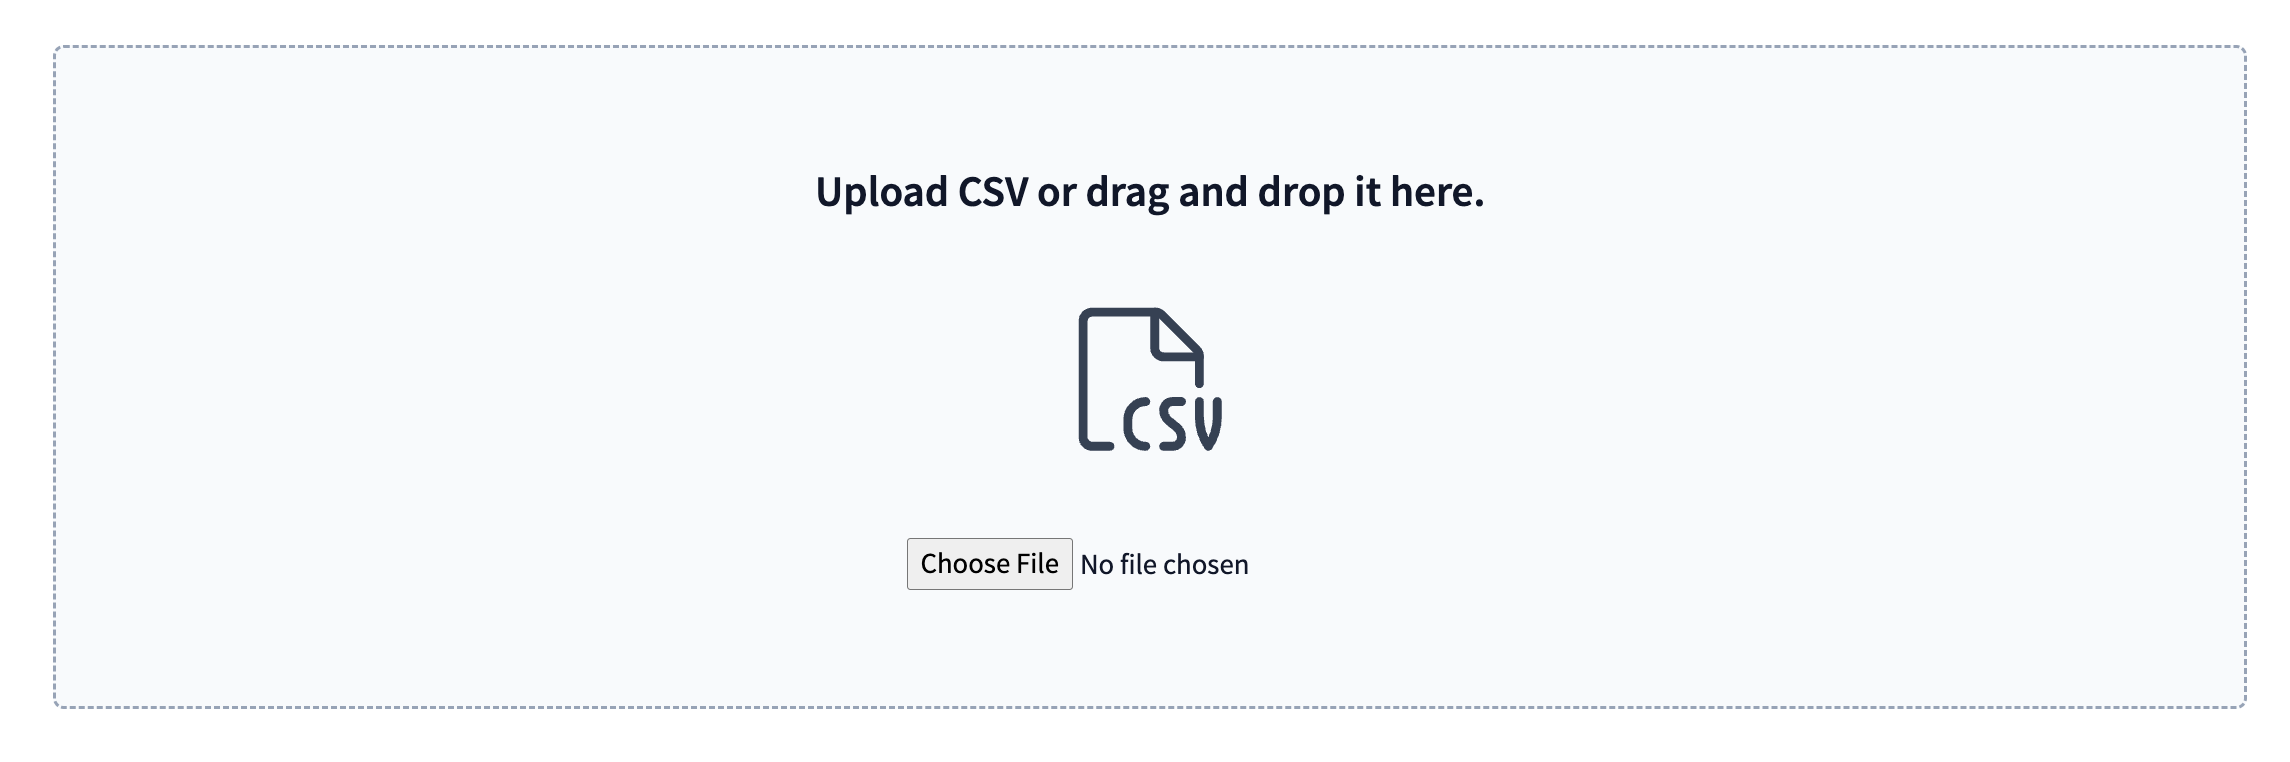 upload-csv-drag-file.png